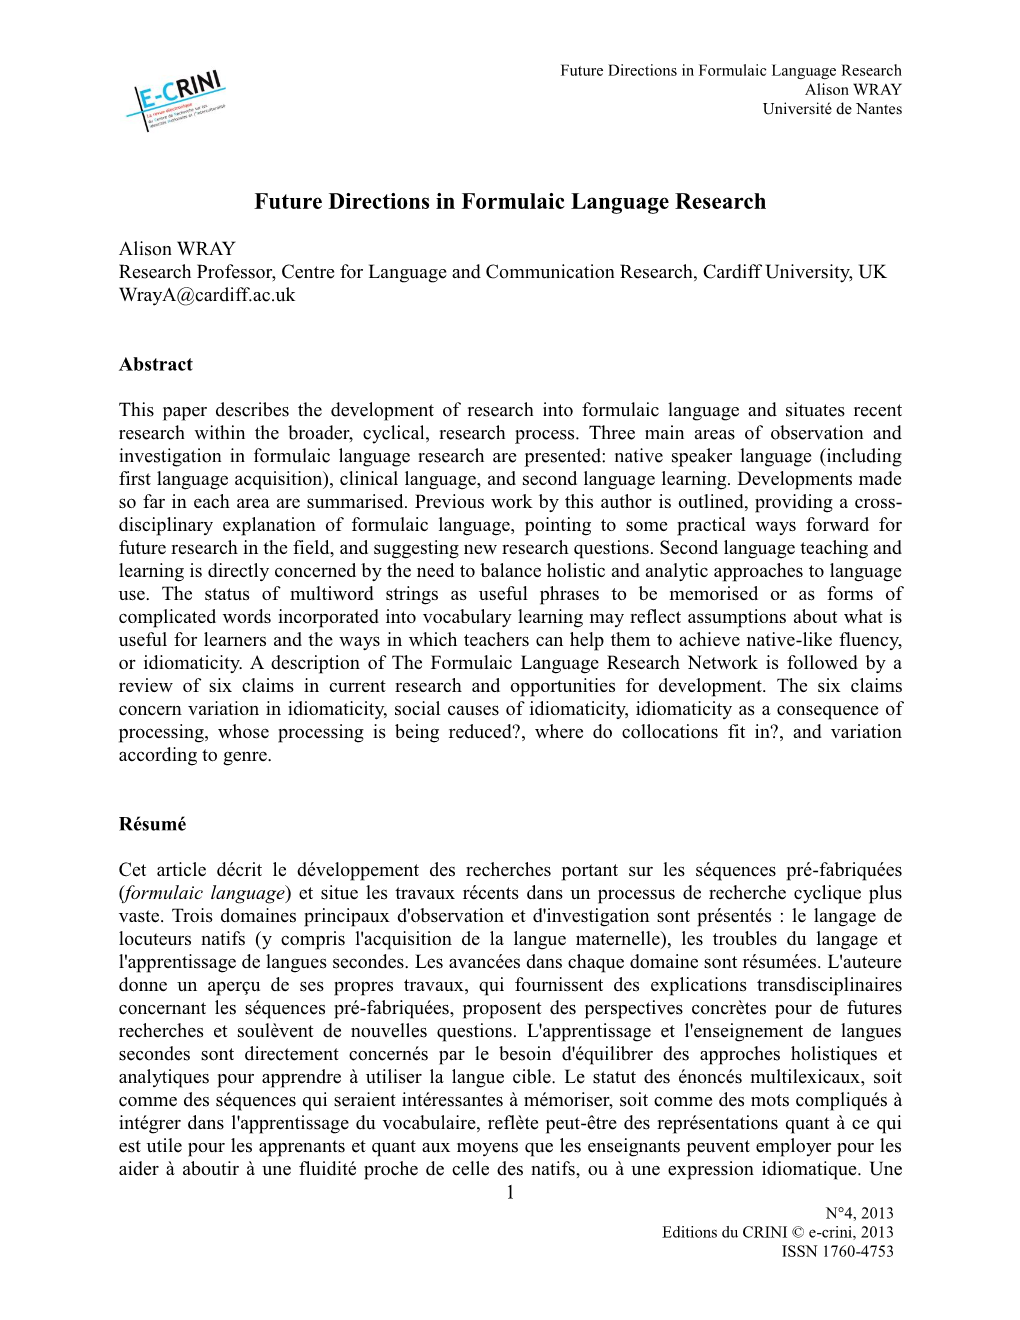 Future Directions in Formulaic Language Research Alison WRAY Université De Nantes